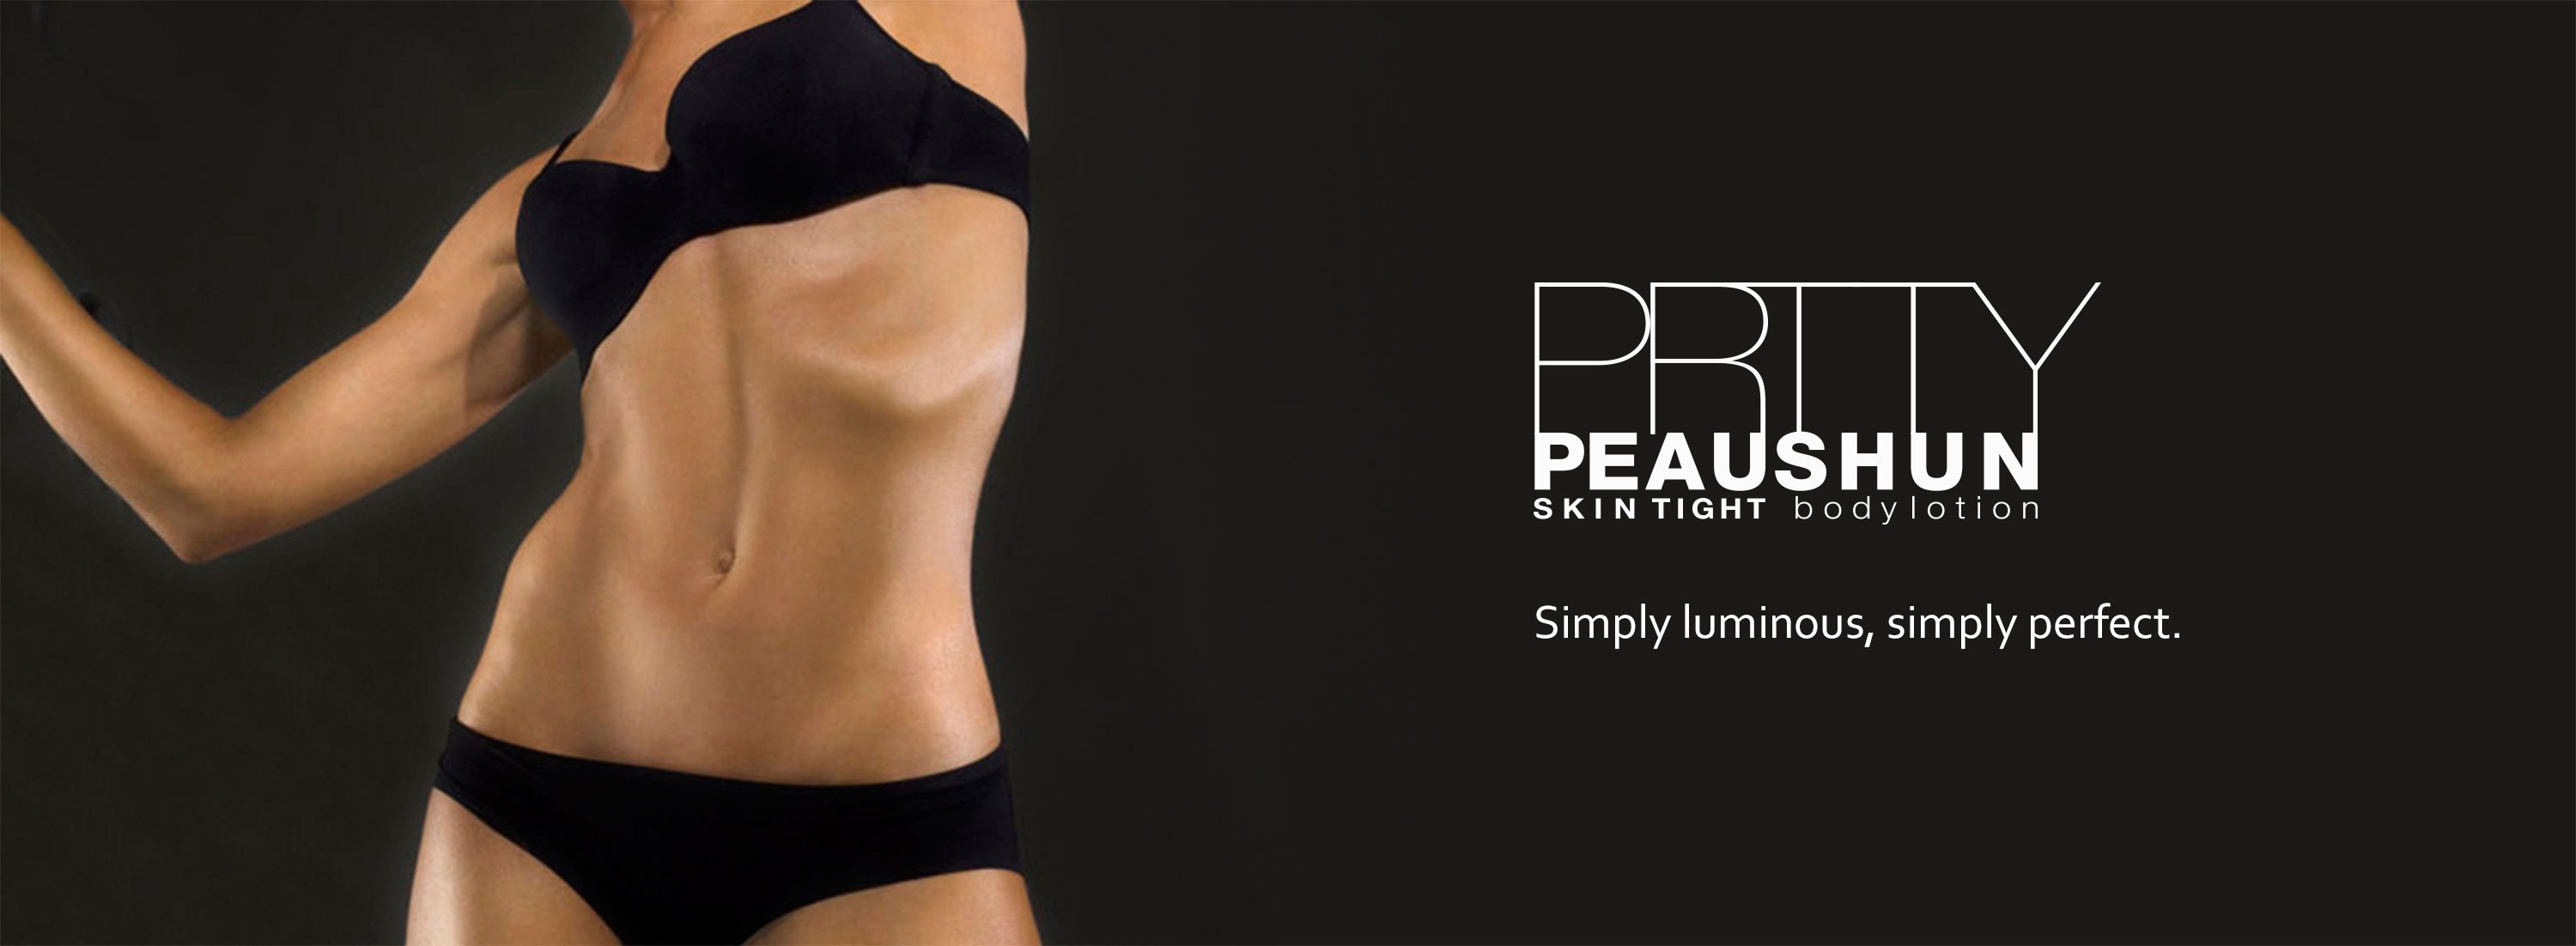 Prtty Peaushun Skin Tight Bodylotion